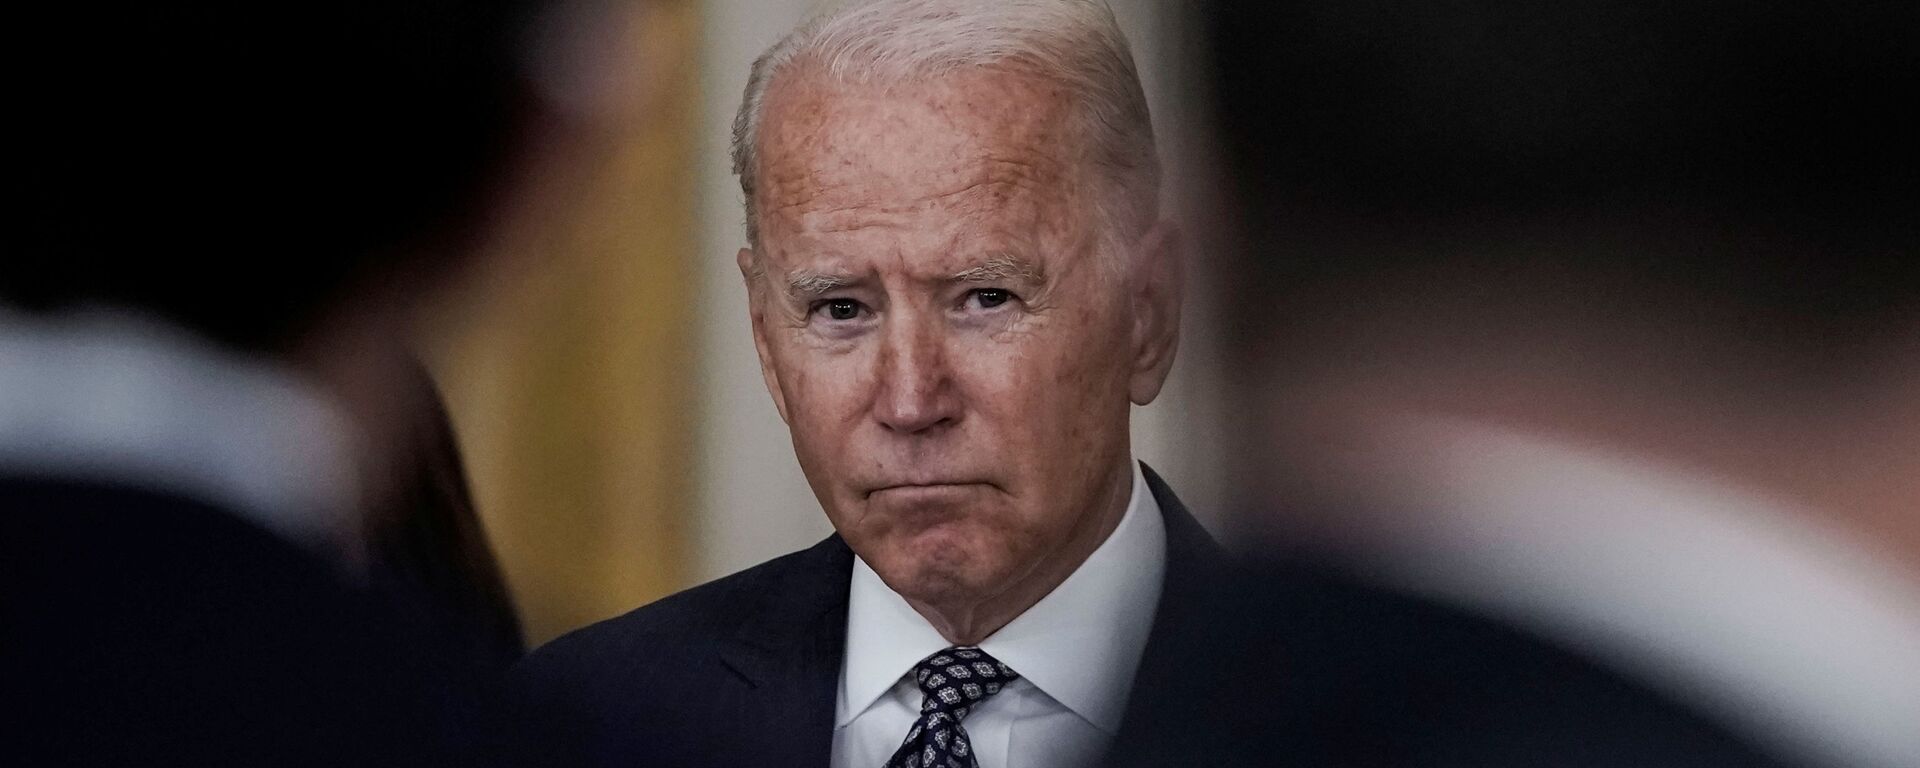 Tổng thống Joe Biden đưa ra nhận xét về các nỗ lực sơ tán và tình hình đang diễn ra ở Afghanistan trong bài phát biểu tại Phòng phía Đông tại Nhà Trắng ở Washington, Hoa Kỳ, ngày 20 tháng 8 năm 2021 - Sputnik Việt Nam, 1920, 01.01.2022